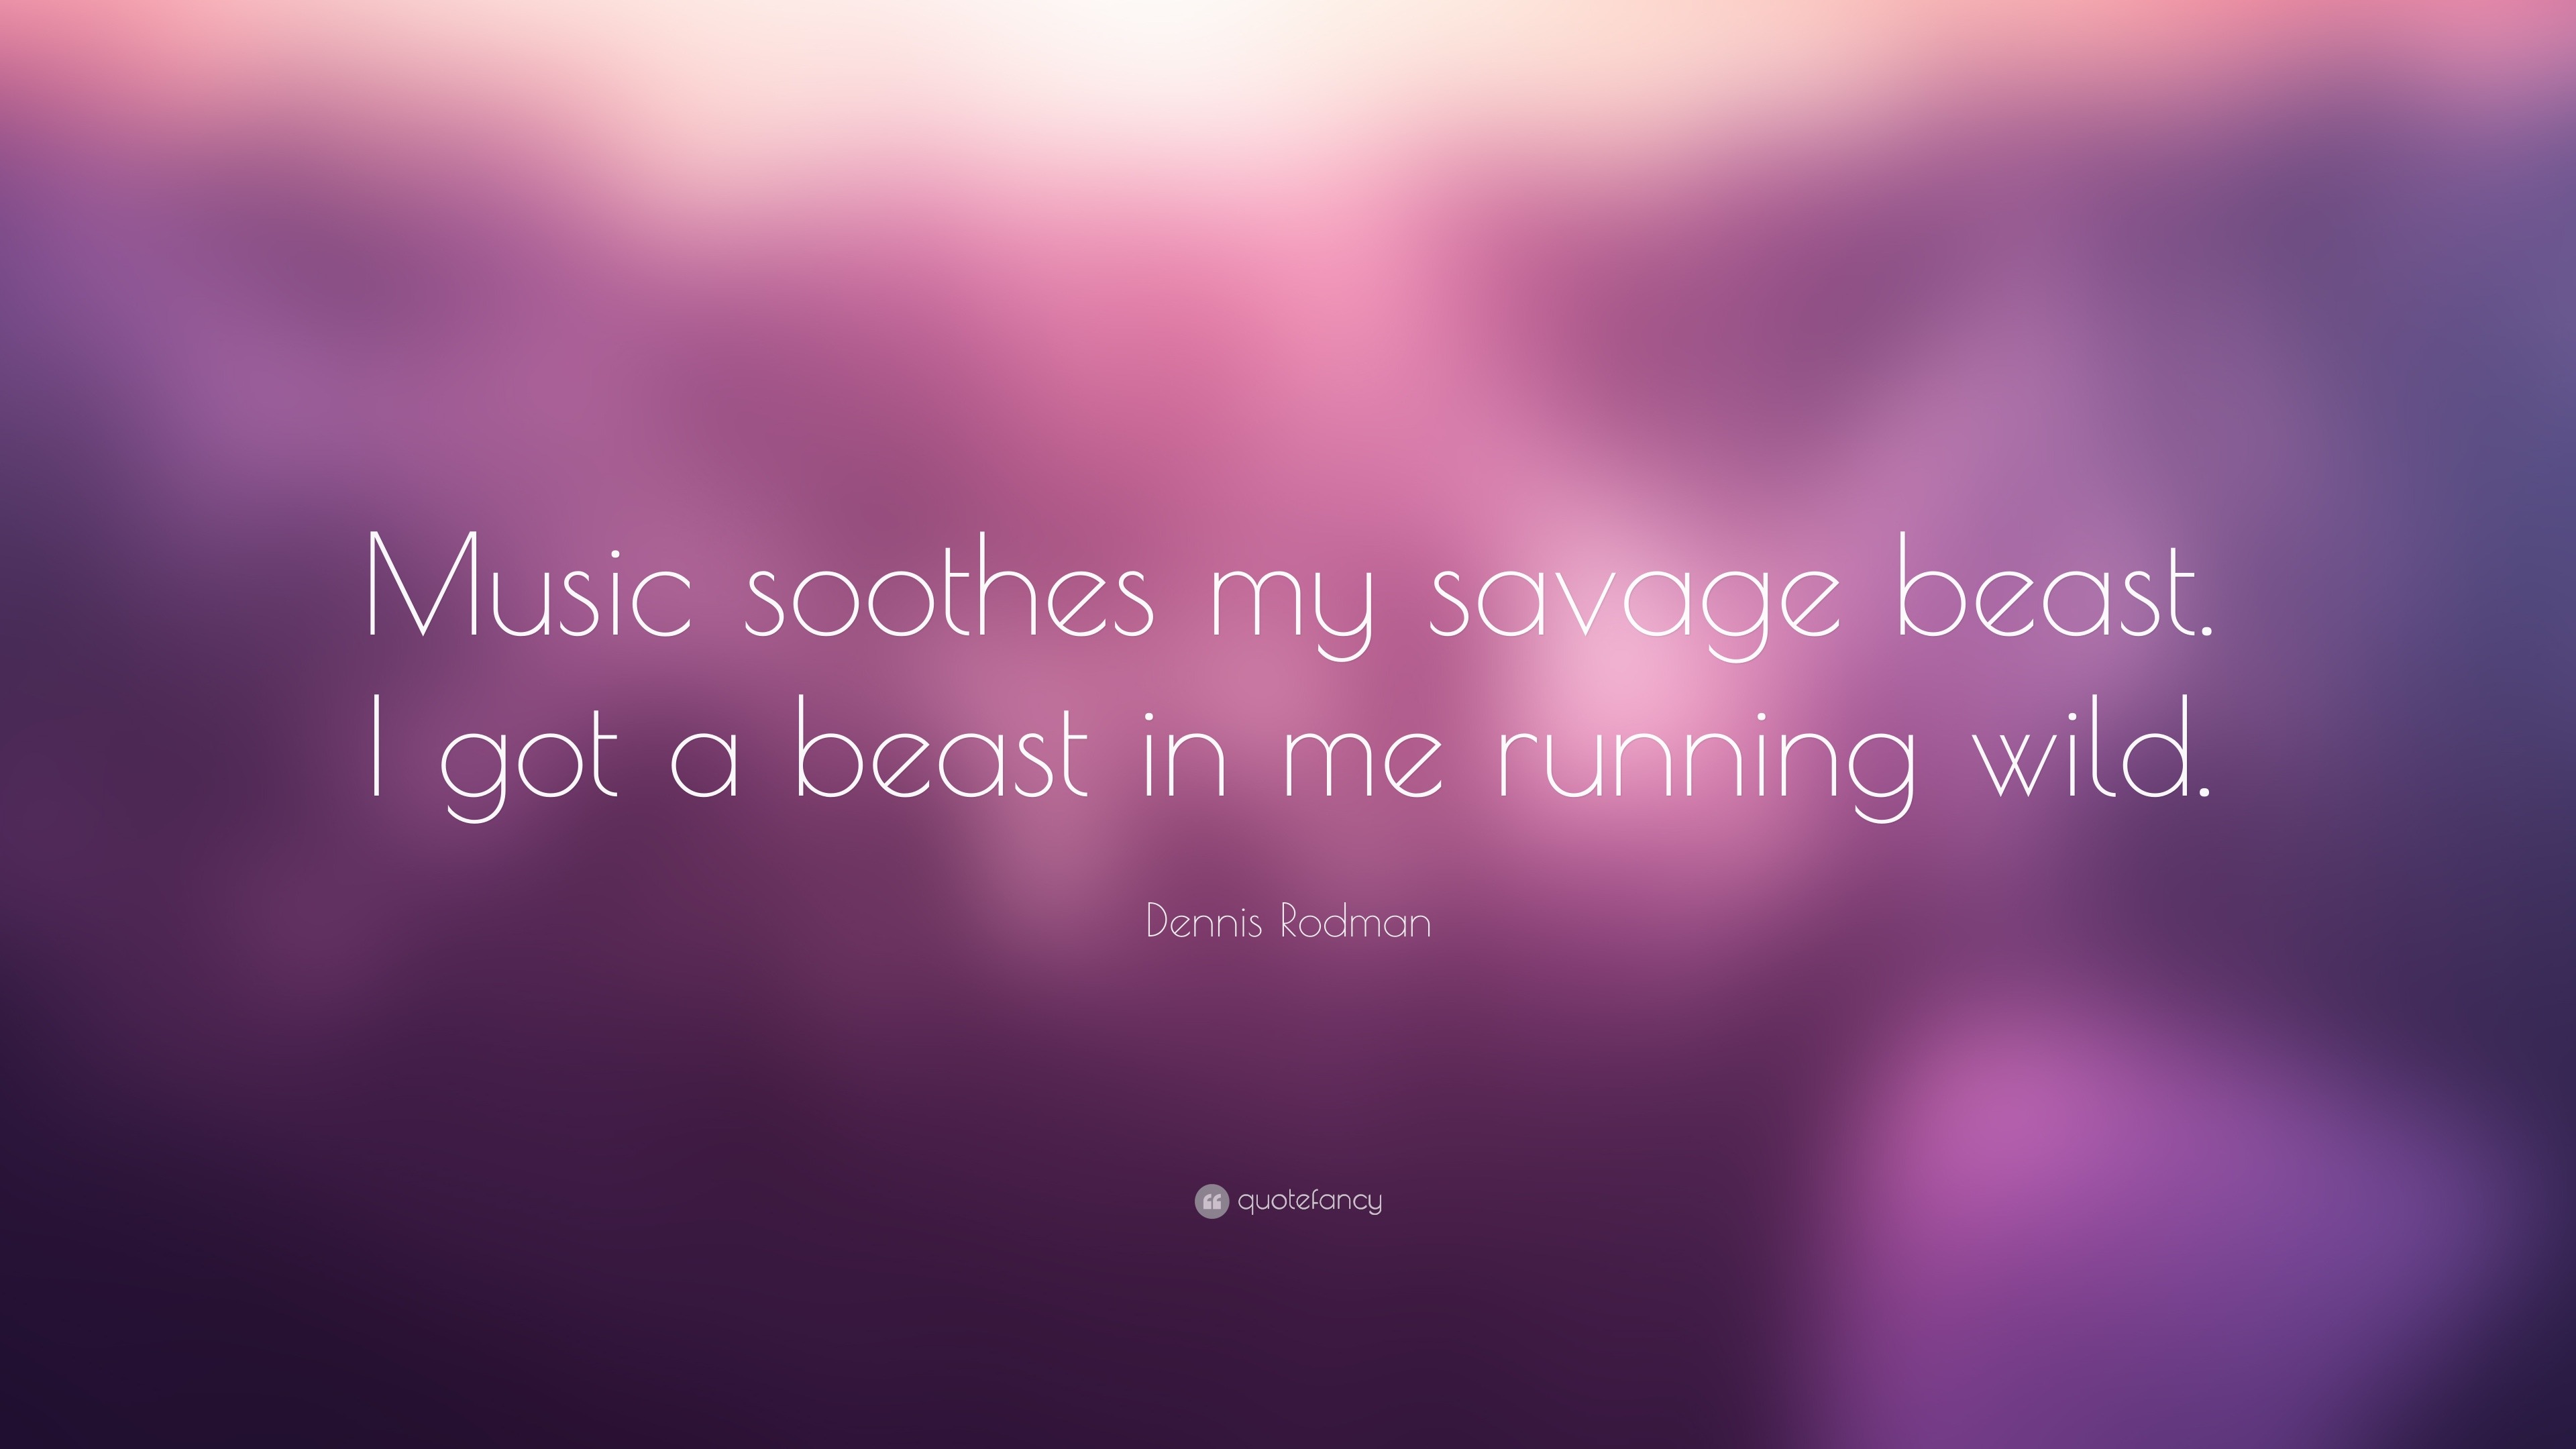 Bahari Savage Lyrics Meaning